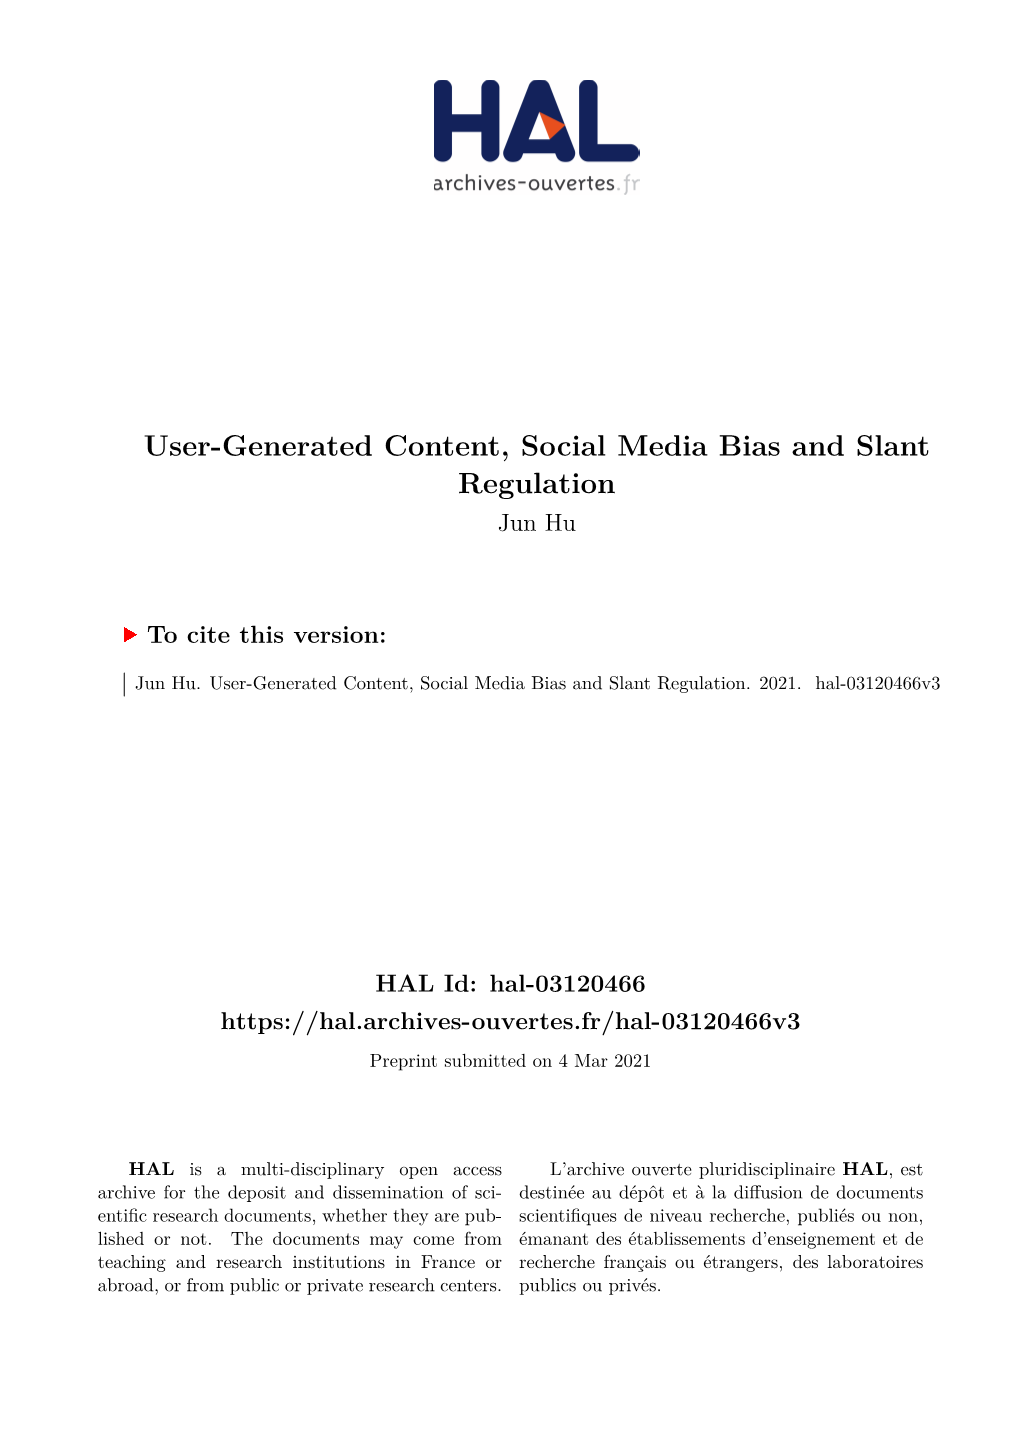 User-Generated Content, Social Media Bias and Slant Regulation Jun Hu